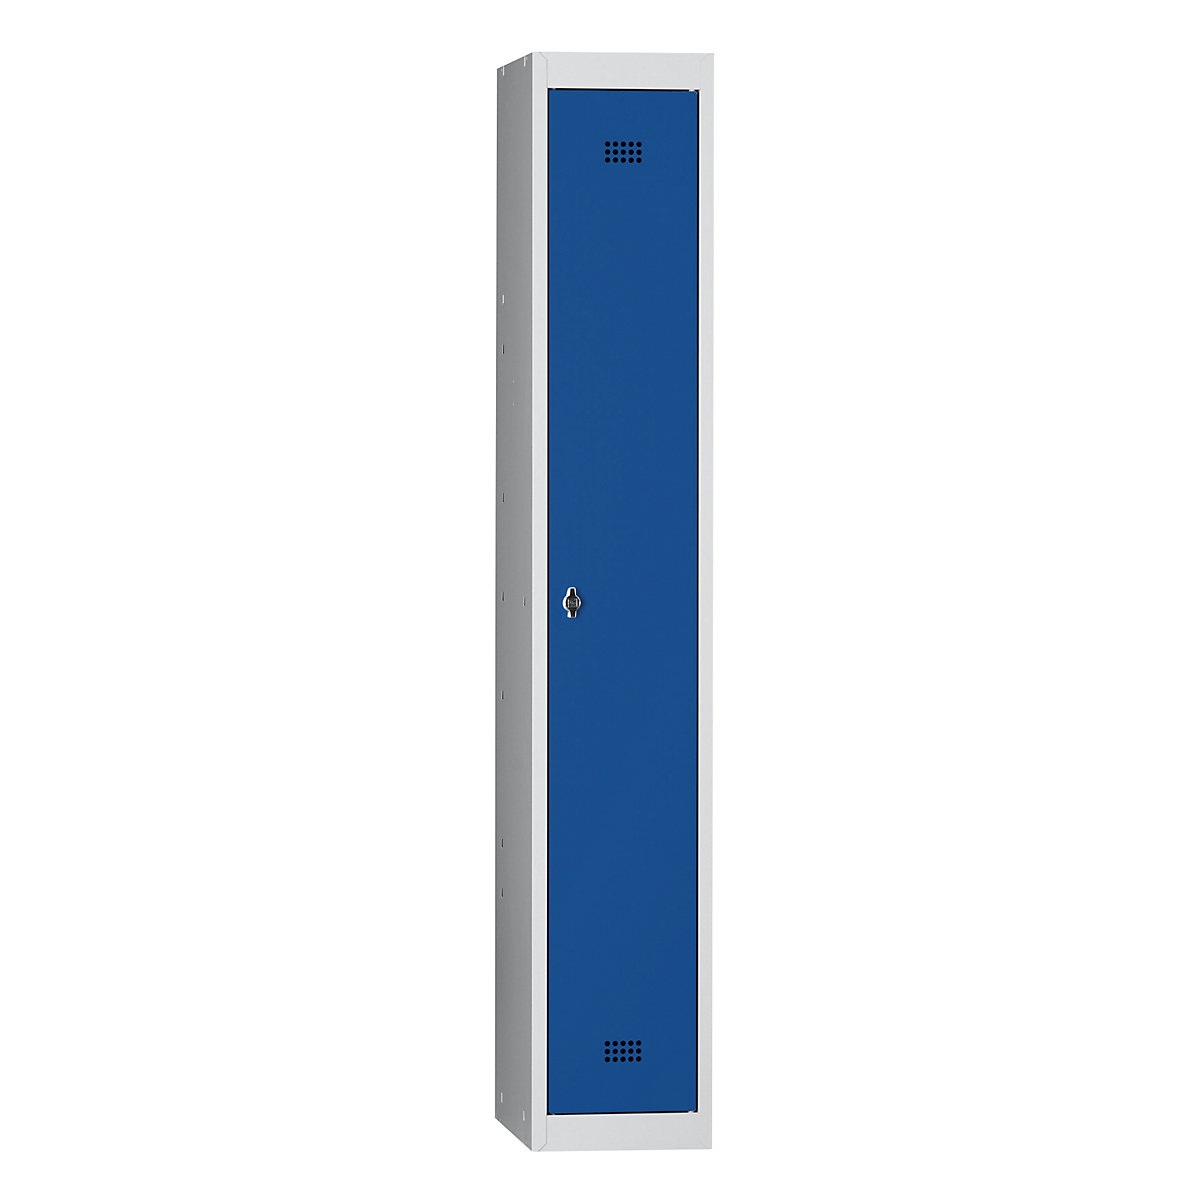 Wolf Stahlspind, 1 Abteil, Höhe 1700 mm, Breite 300 mm, 1 Hutboden, 1 Kleiderstange, Grundelement, lichtgrau / enzianblau